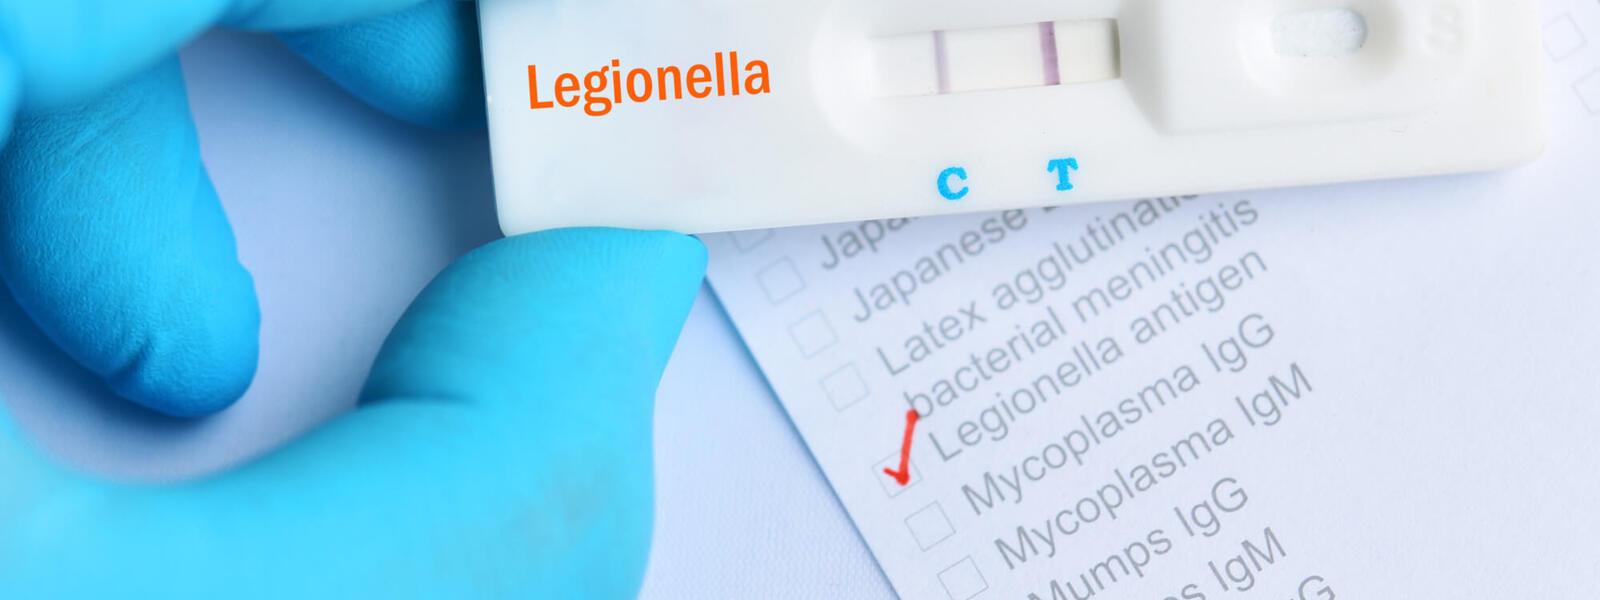 Legionella and limescale